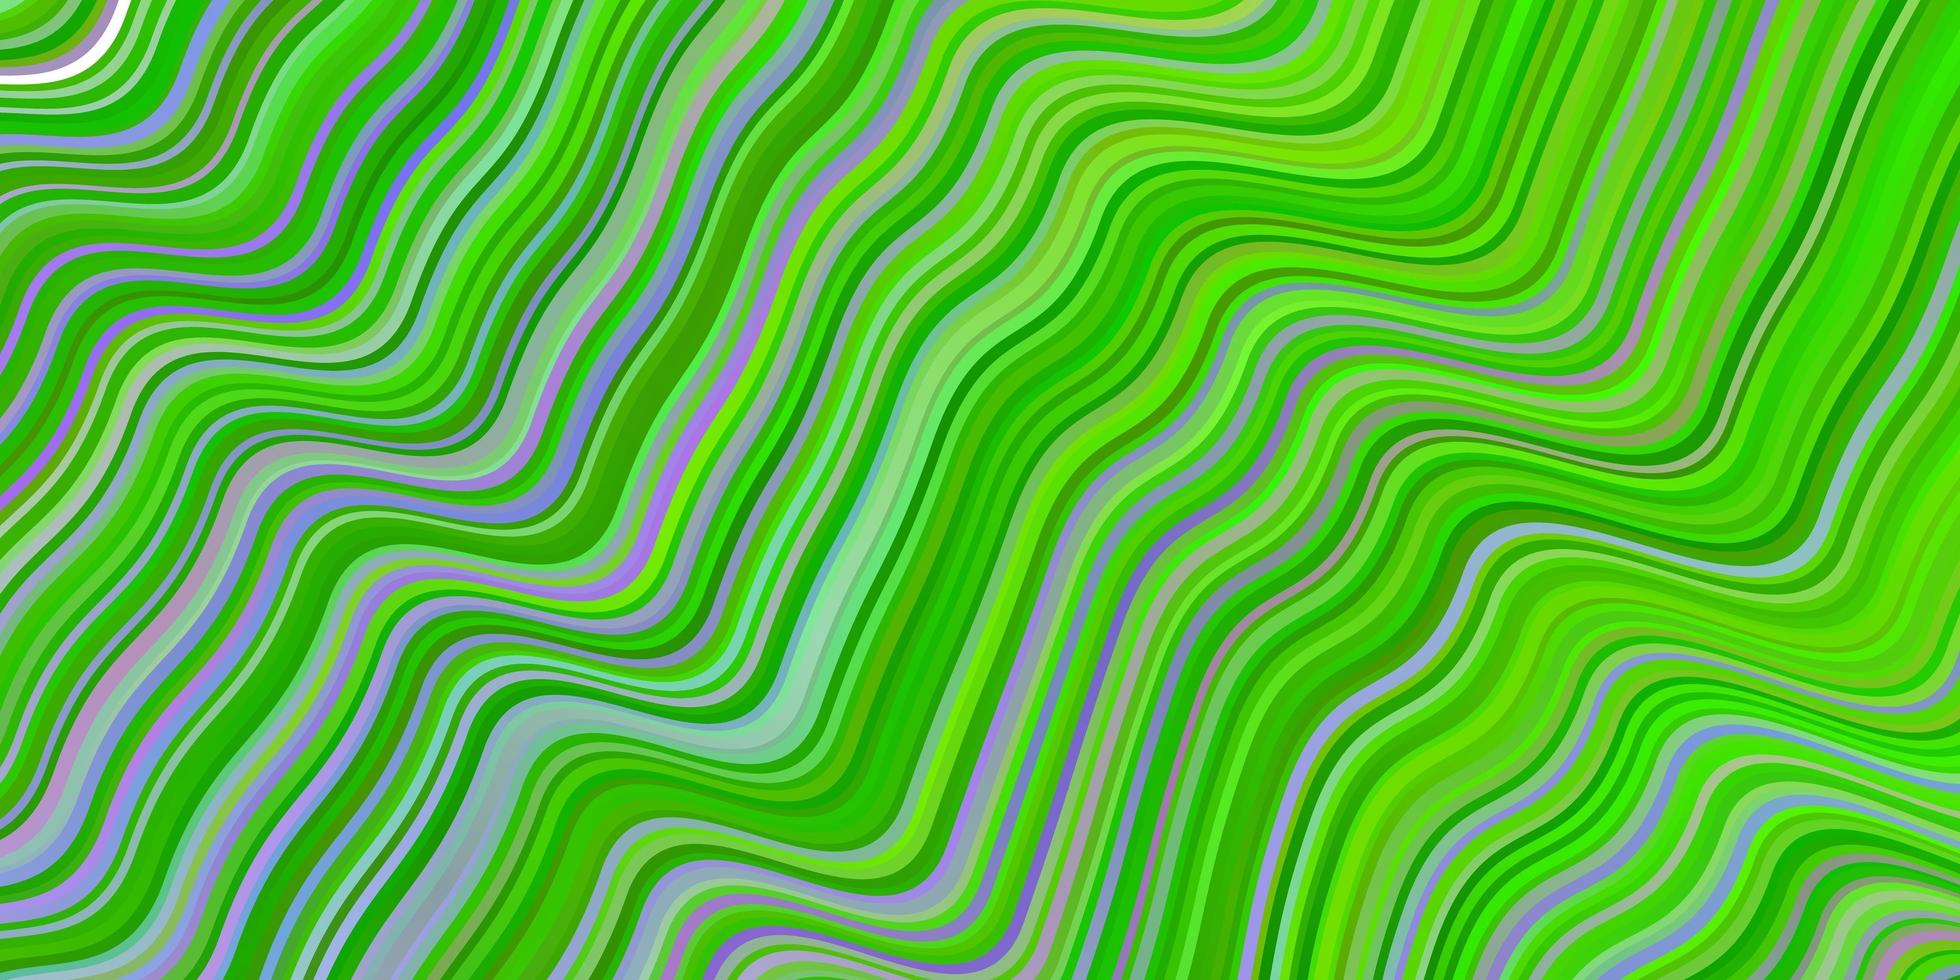 motif vectoriel vert rose clair avec des lignes